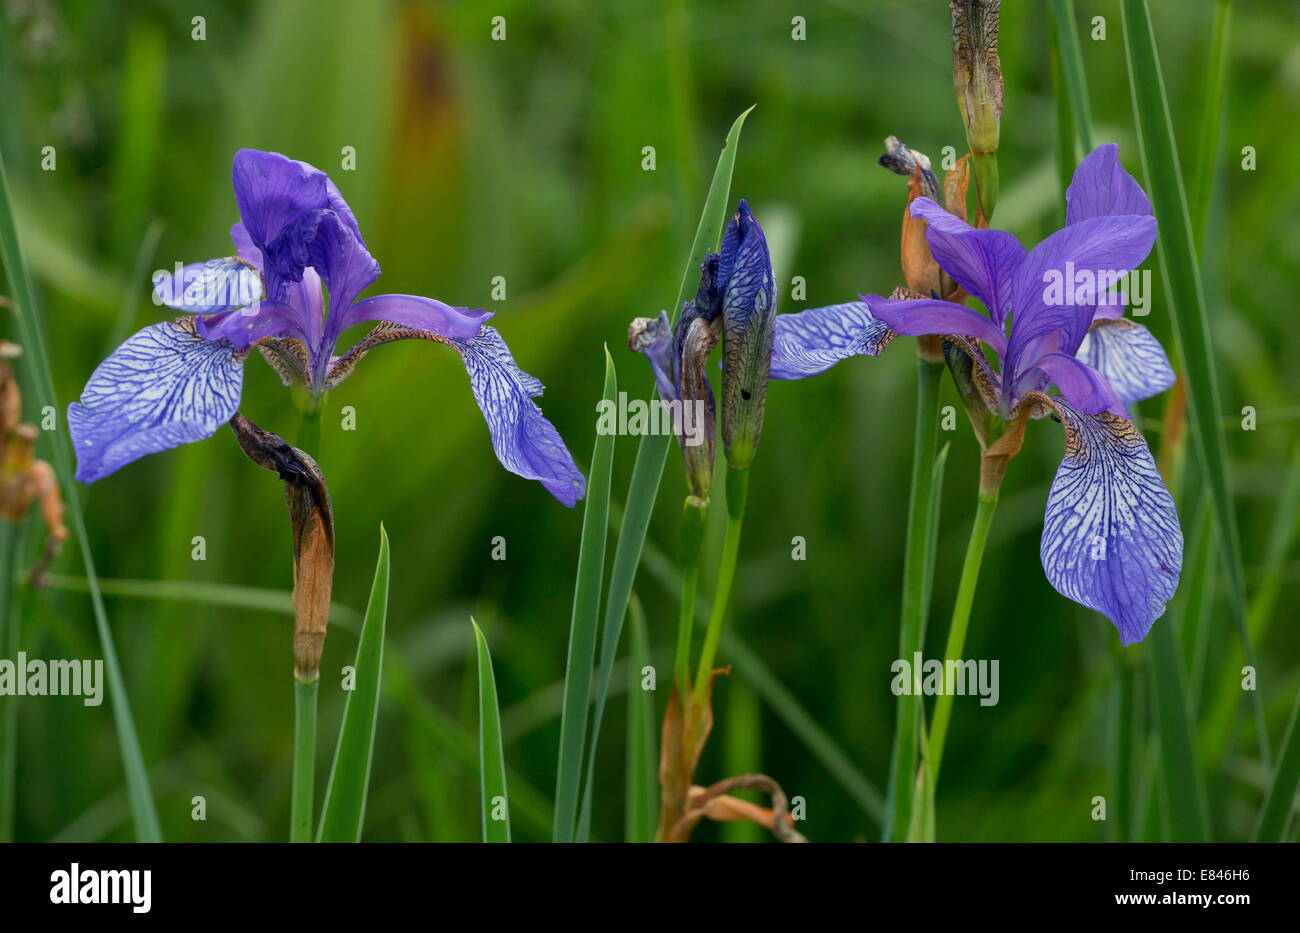 Siberian Iride / Bandiera siberiana, Iris sibirica nel selvaggio in una palude in Romania Foto Stock